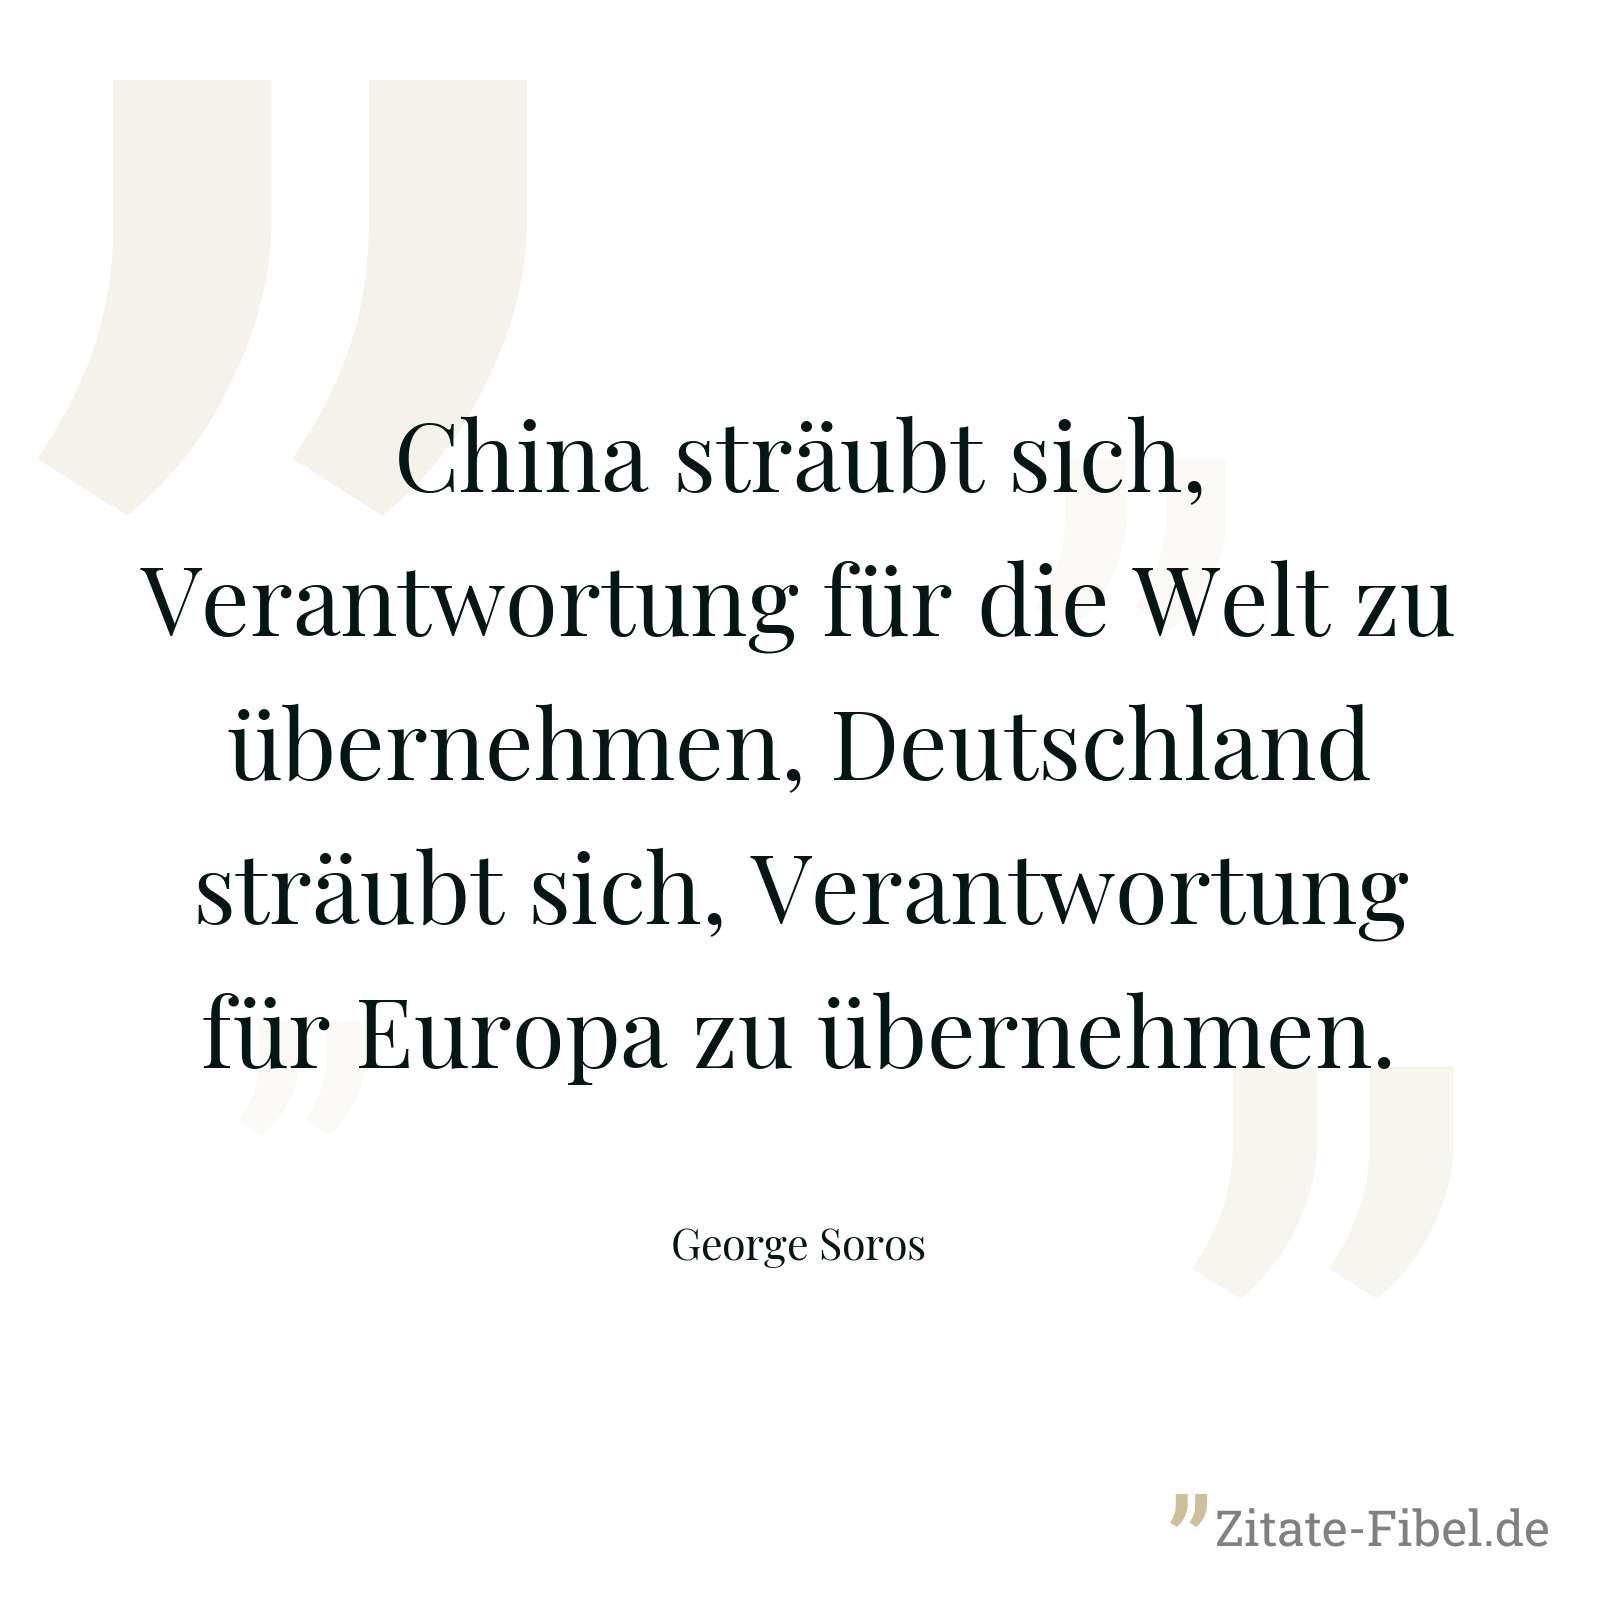 China sträubt sich, Verantwortung für die Welt zu übernehmen, Deutschland sträubt sich, Verantwortung für Europa zu übernehmen. - George Soros